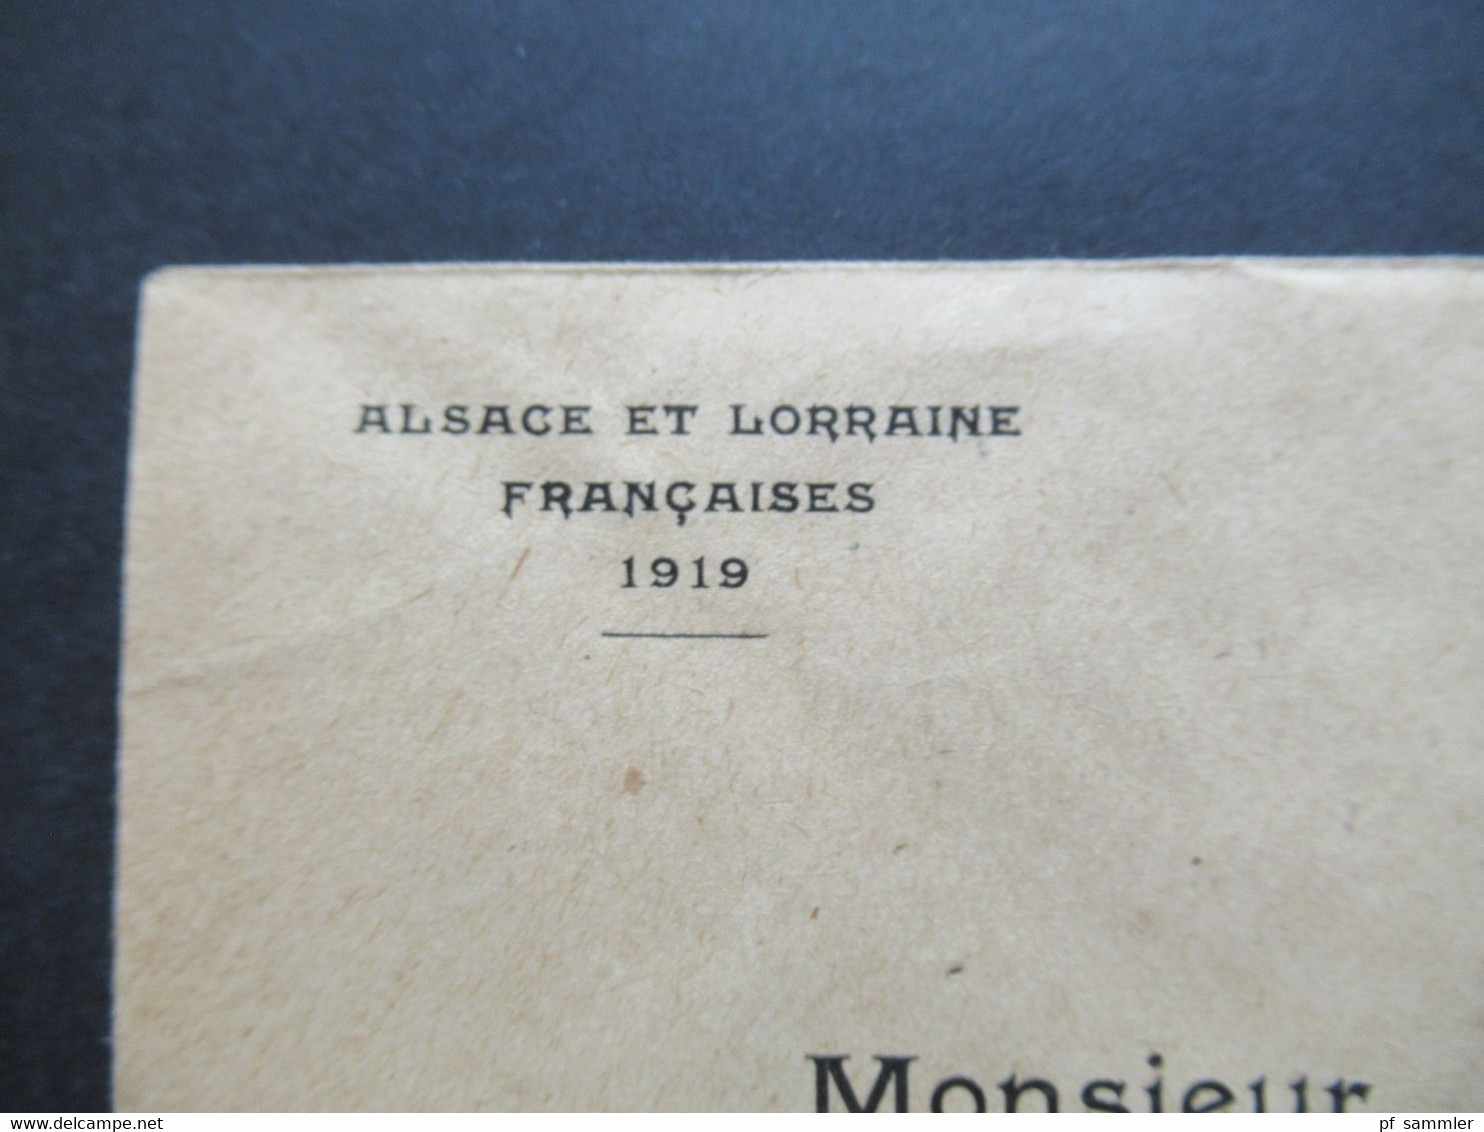 Frankreich Elsass 1919 Umschlag Alsace Et Lorraine Stempel K1 Gross - Tenquin Nach Schoenau Par Sundhausen - Lettres & Documents